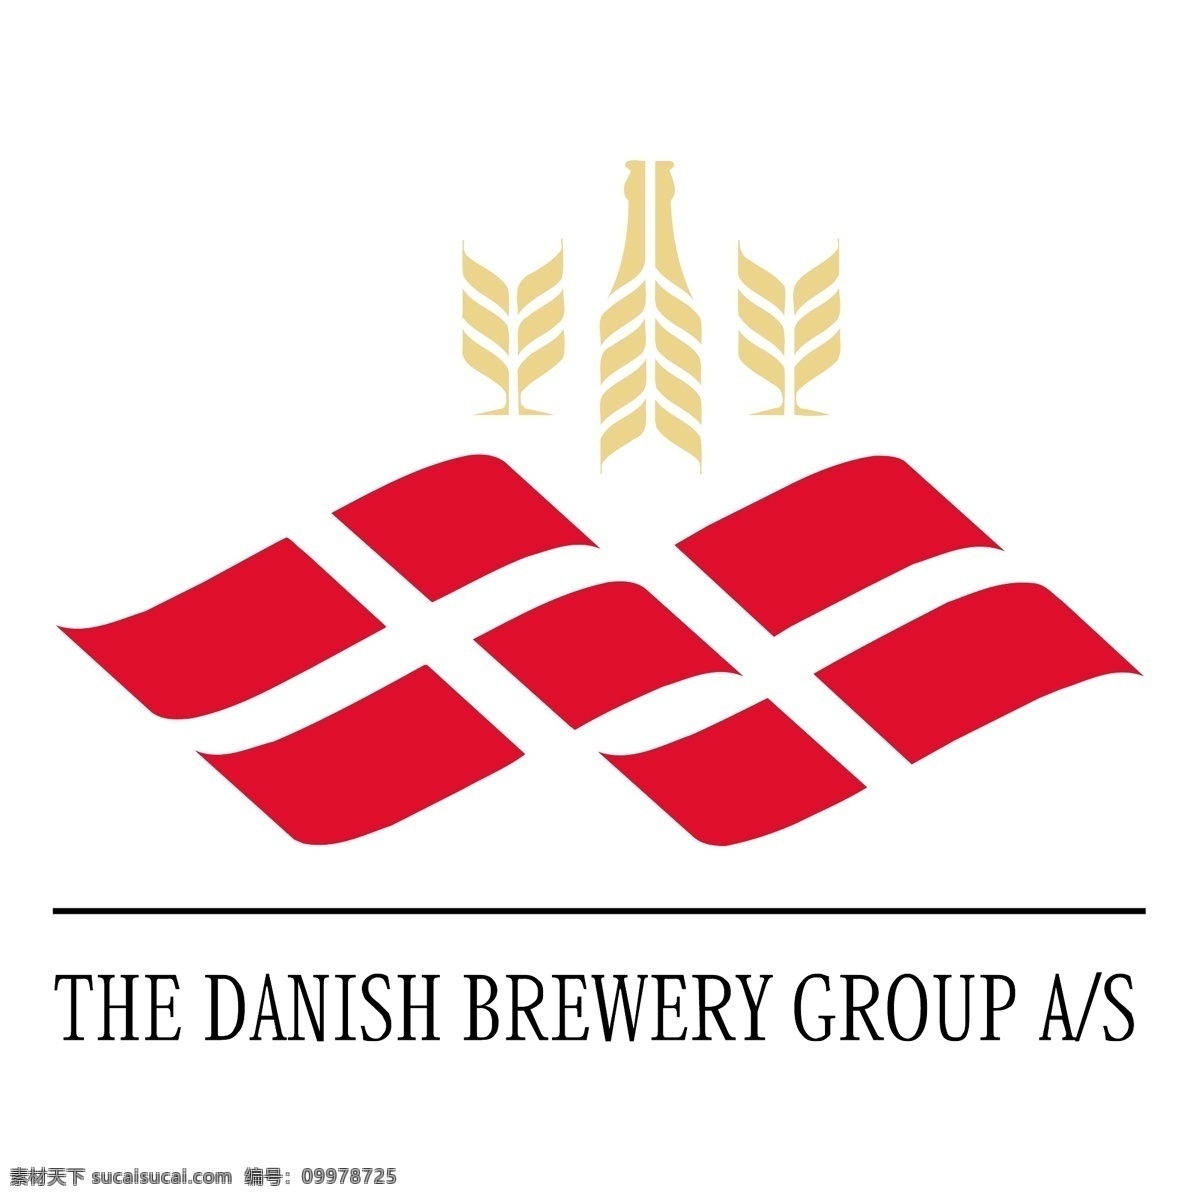 丹麦 啤酒 集团 丹麦语 丹麦啤酒集团 矢量图 其他矢量图